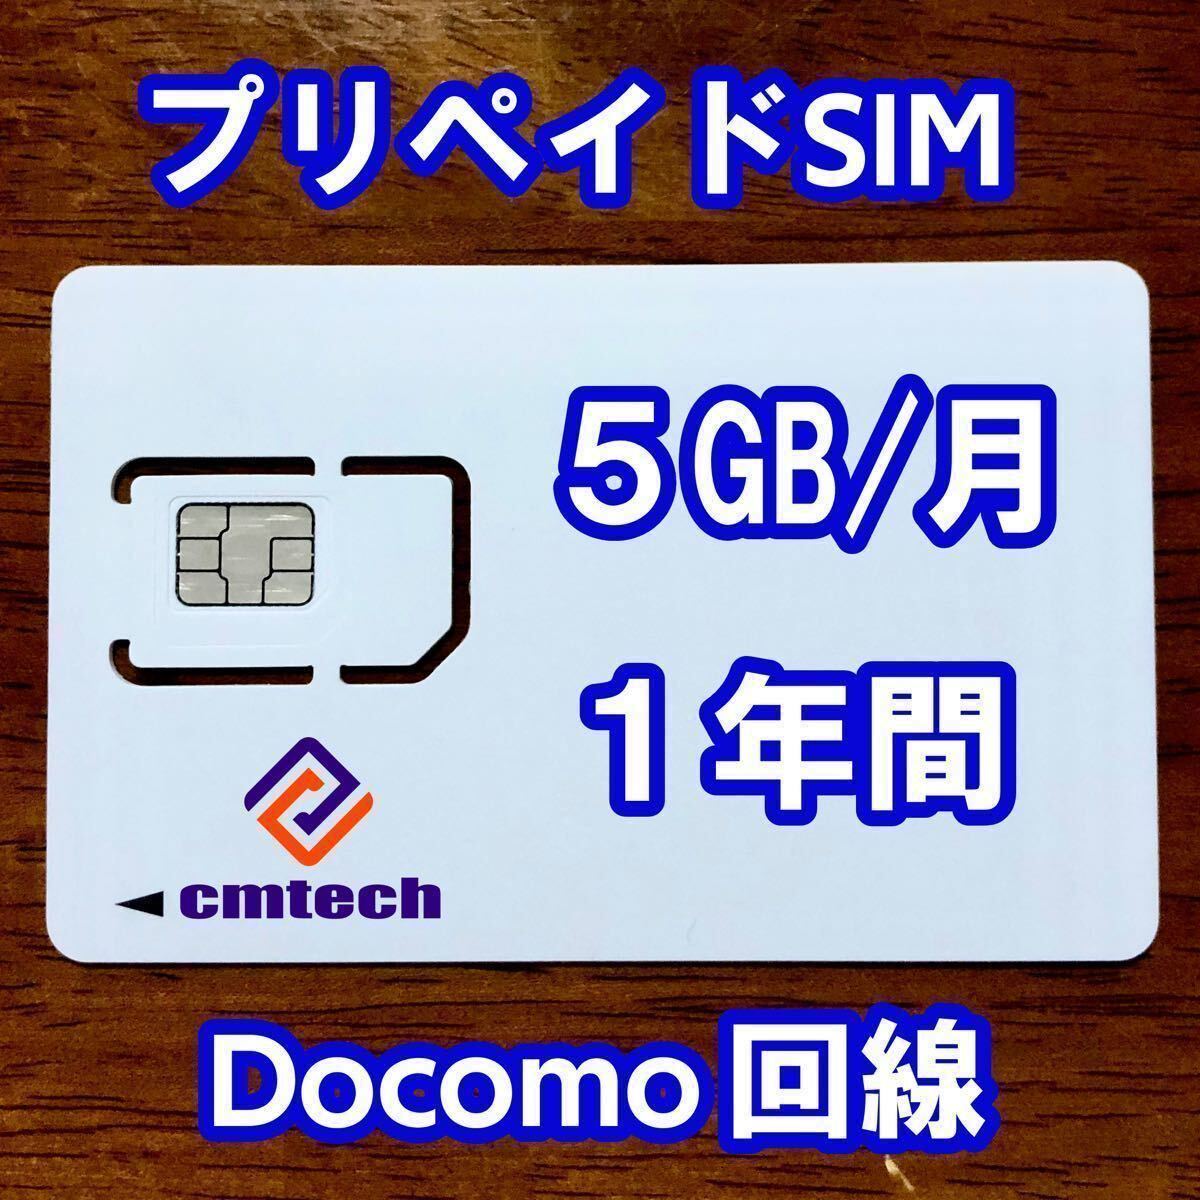 Docomo回線 プリペイドsim 5GB/月1年間有効 データ通信simカード646の画像1